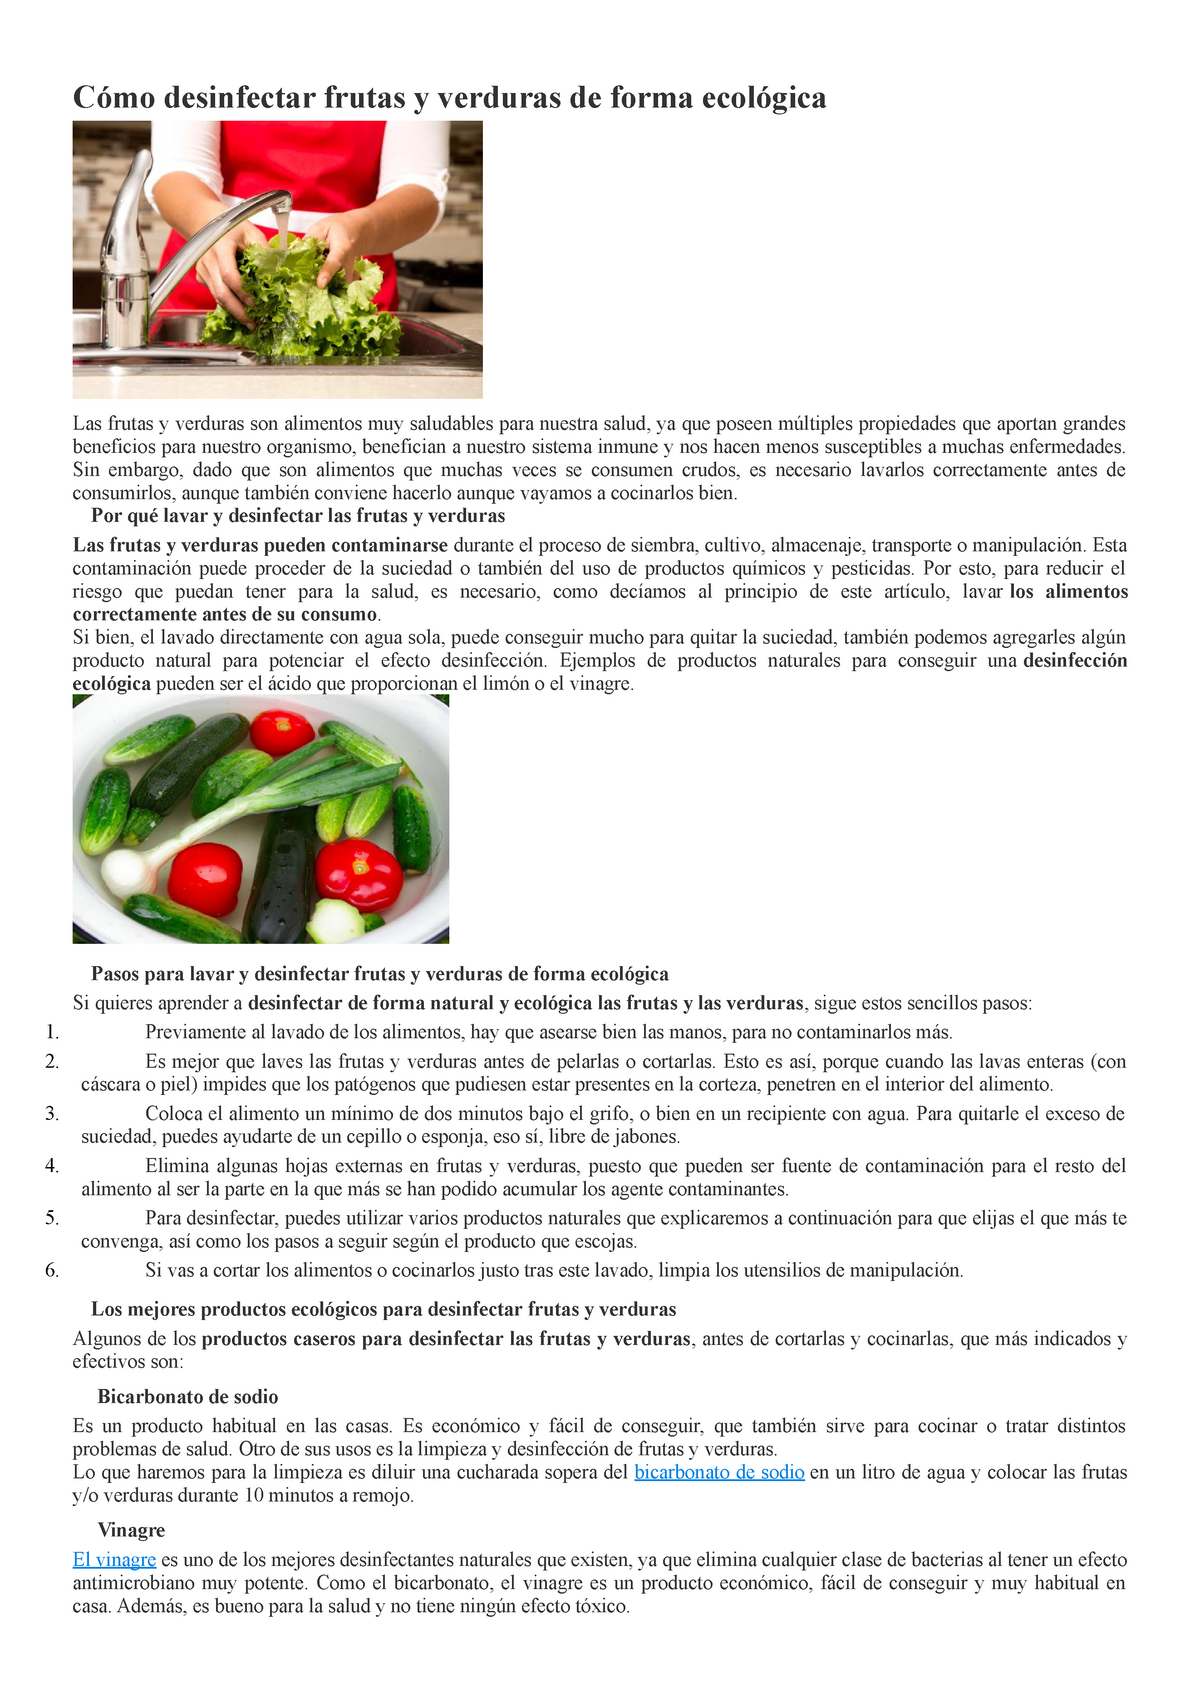 Cómo desinfectar frutas y verduras (naturalmente)